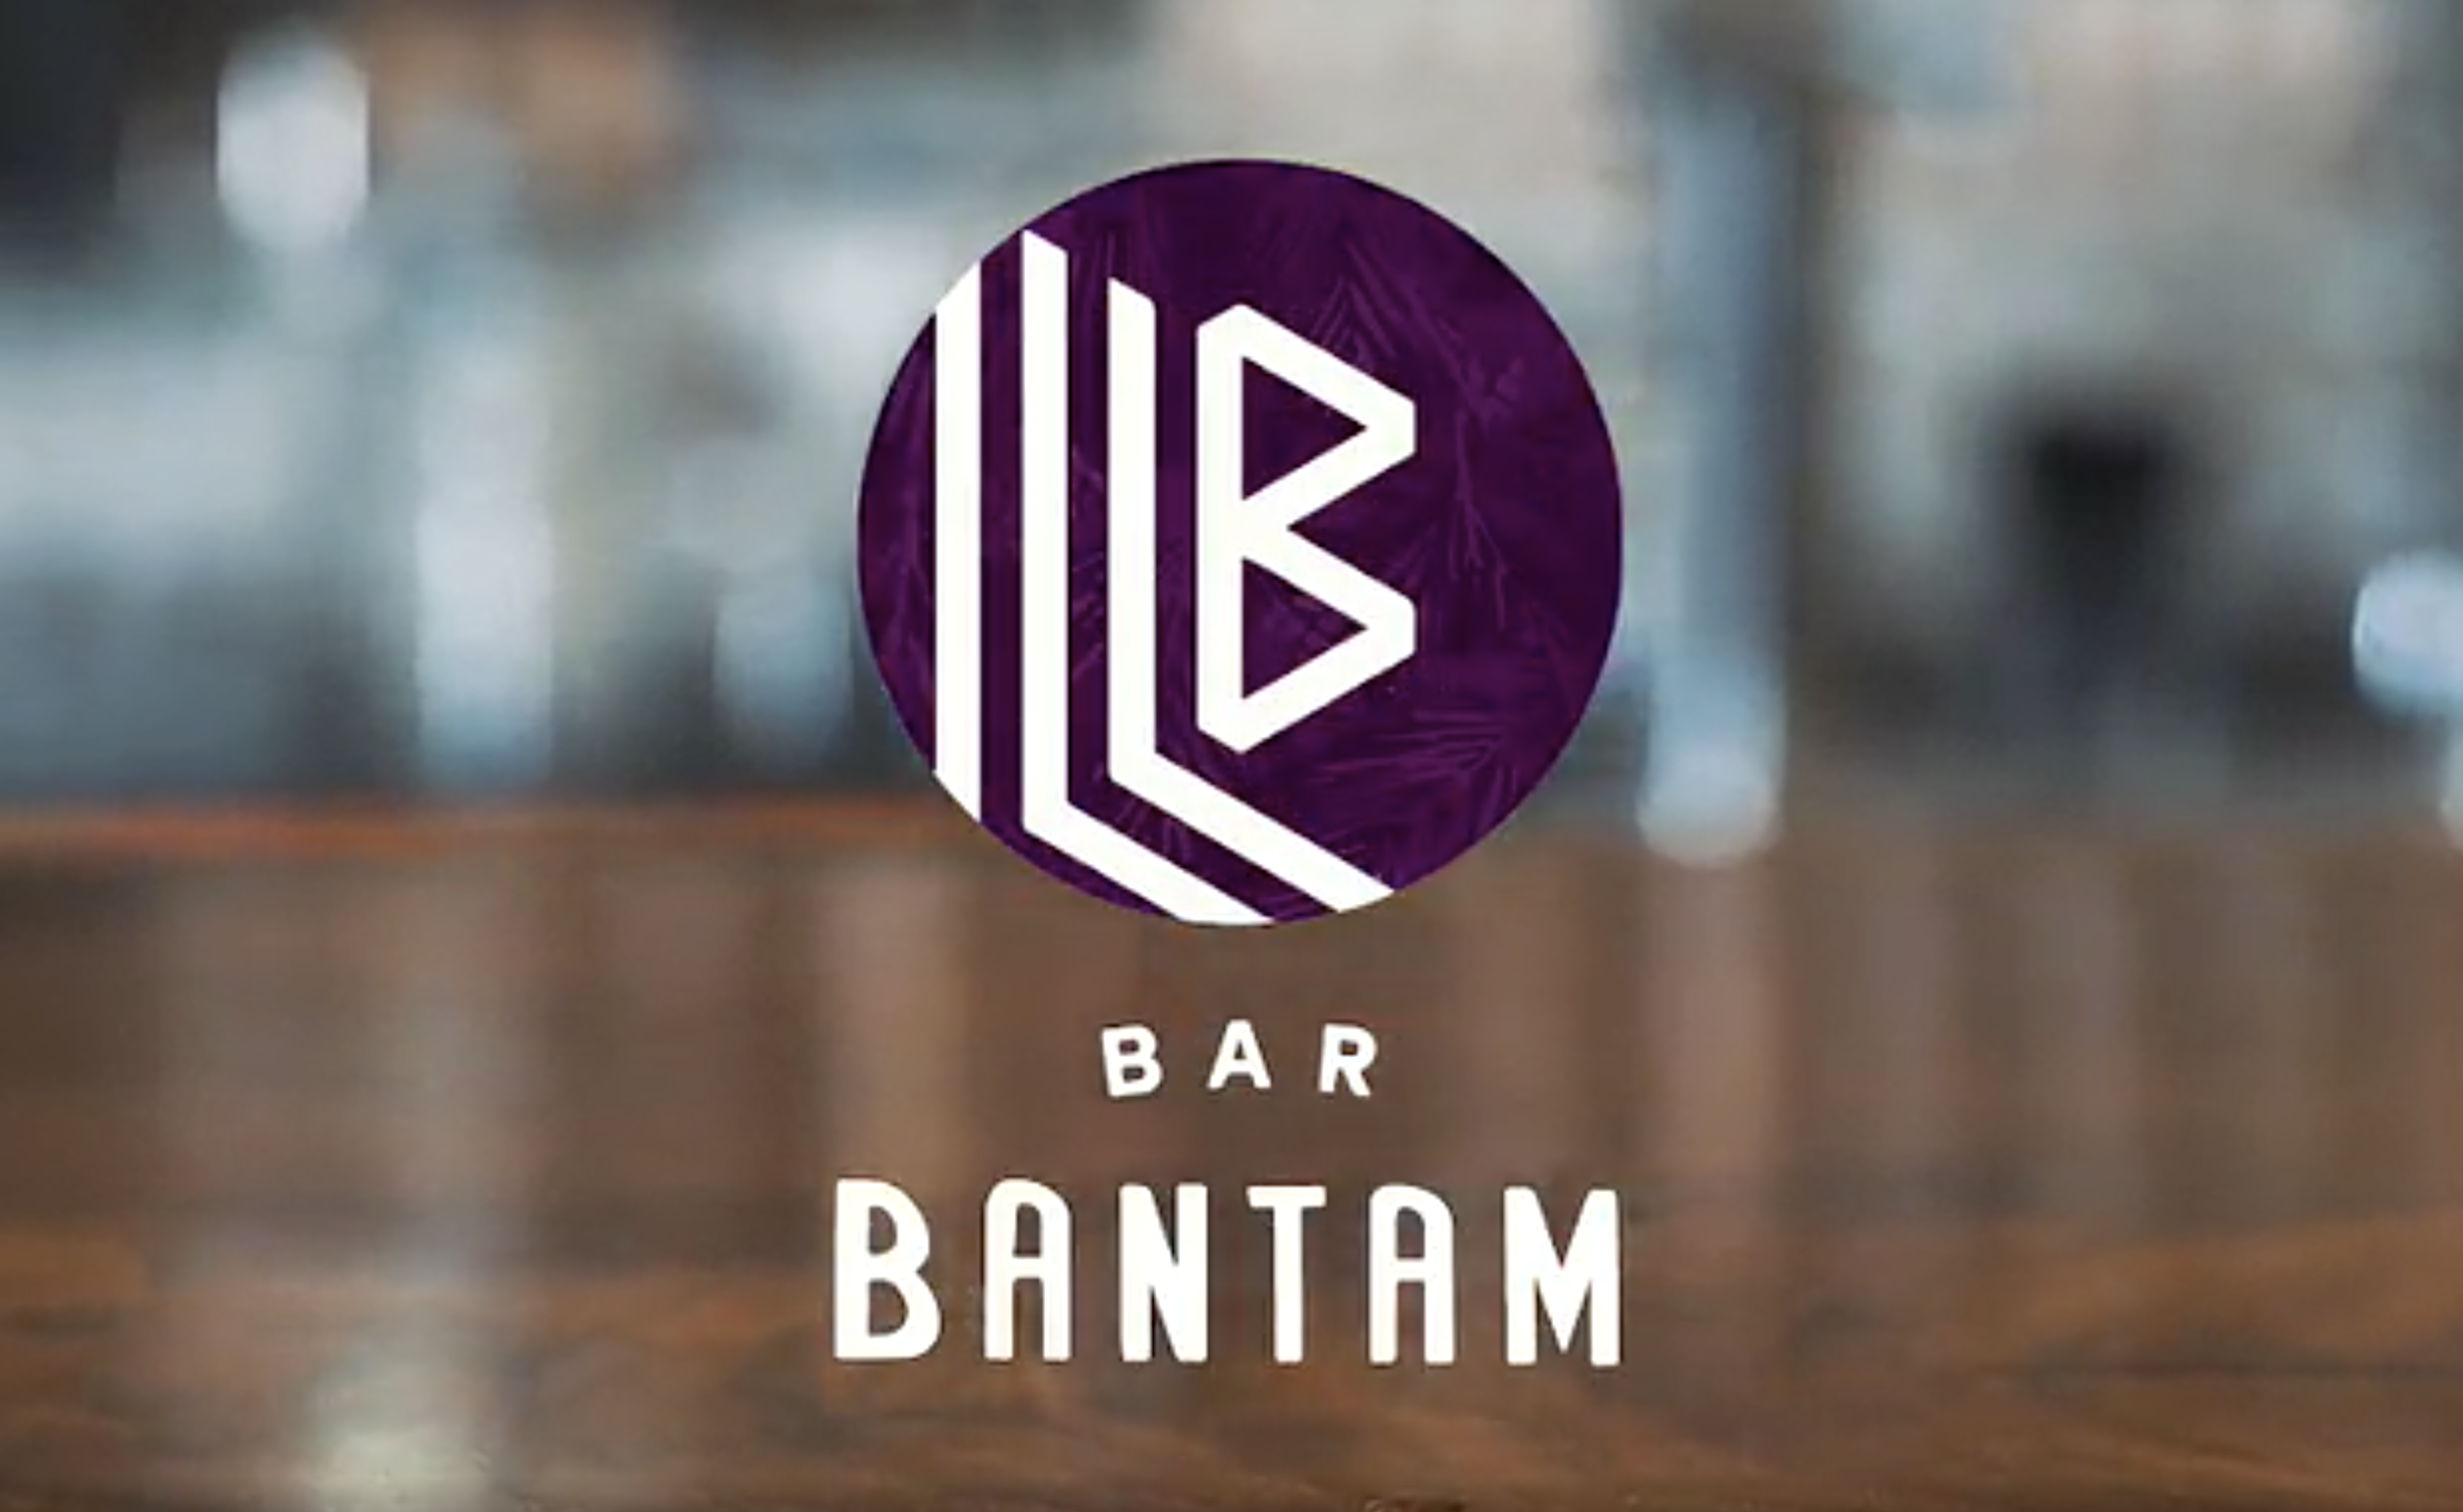 Bar Bantam